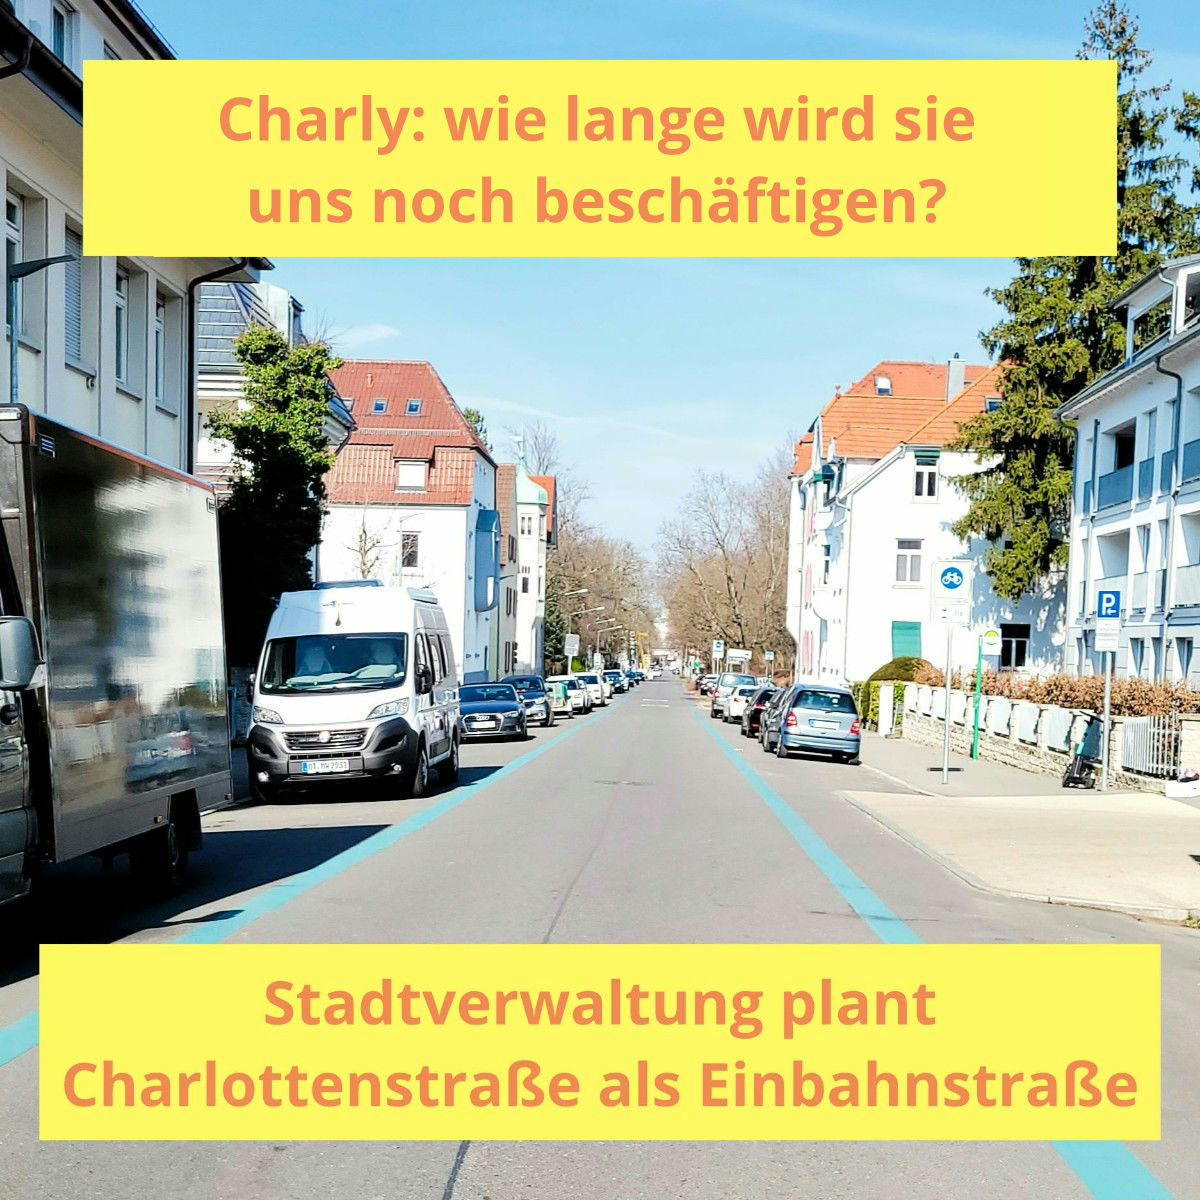 Verwaltung plant Charlottenstraße als Einbahnstraße (Redebeitrag BVUA)